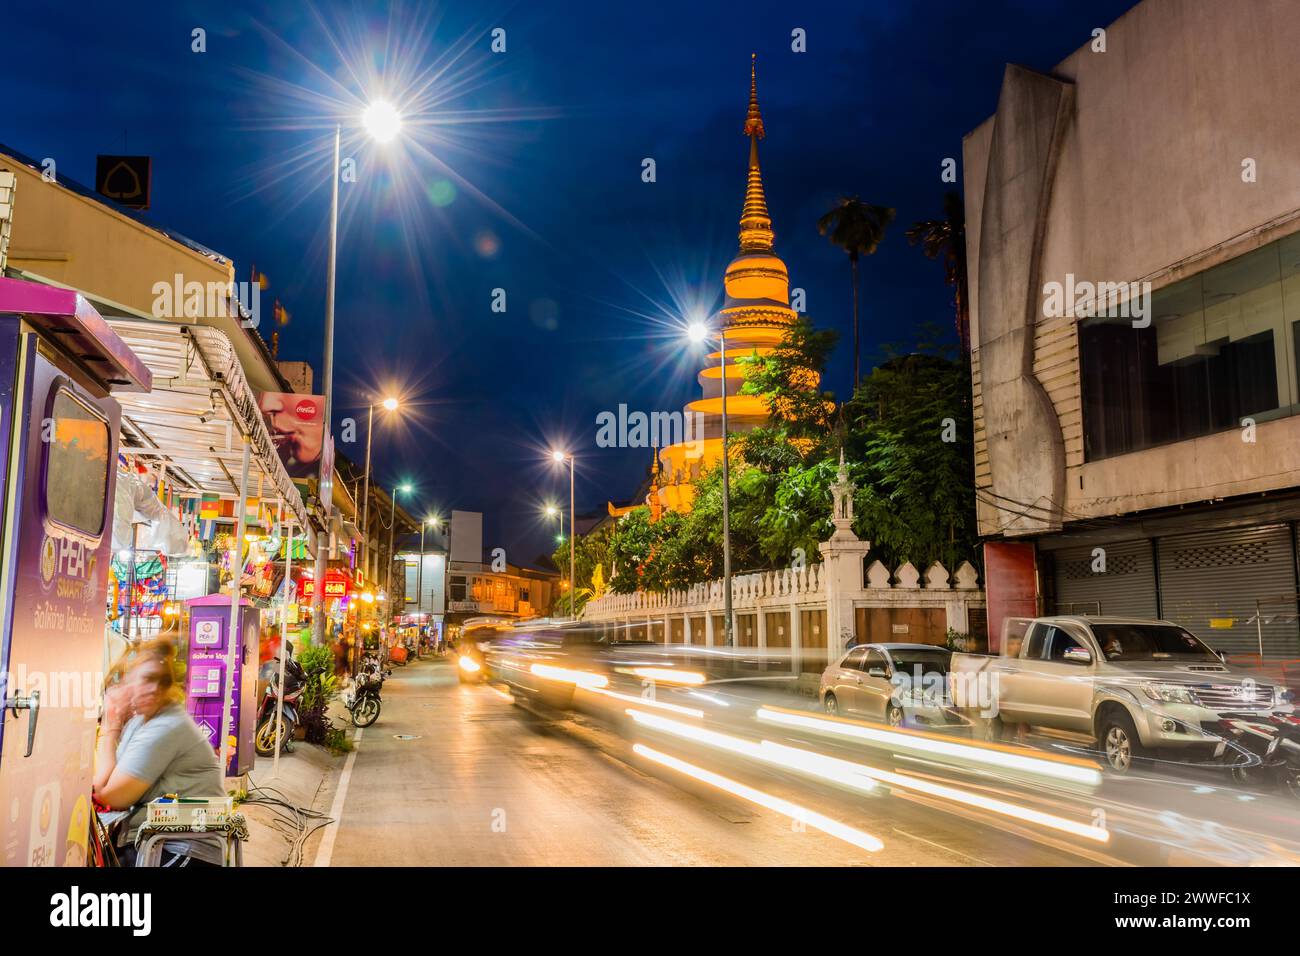 Una vivace scena di strada di notte con una lunga esposizione delle luci della città, a Chiang mai, Thailandia Foto Stock